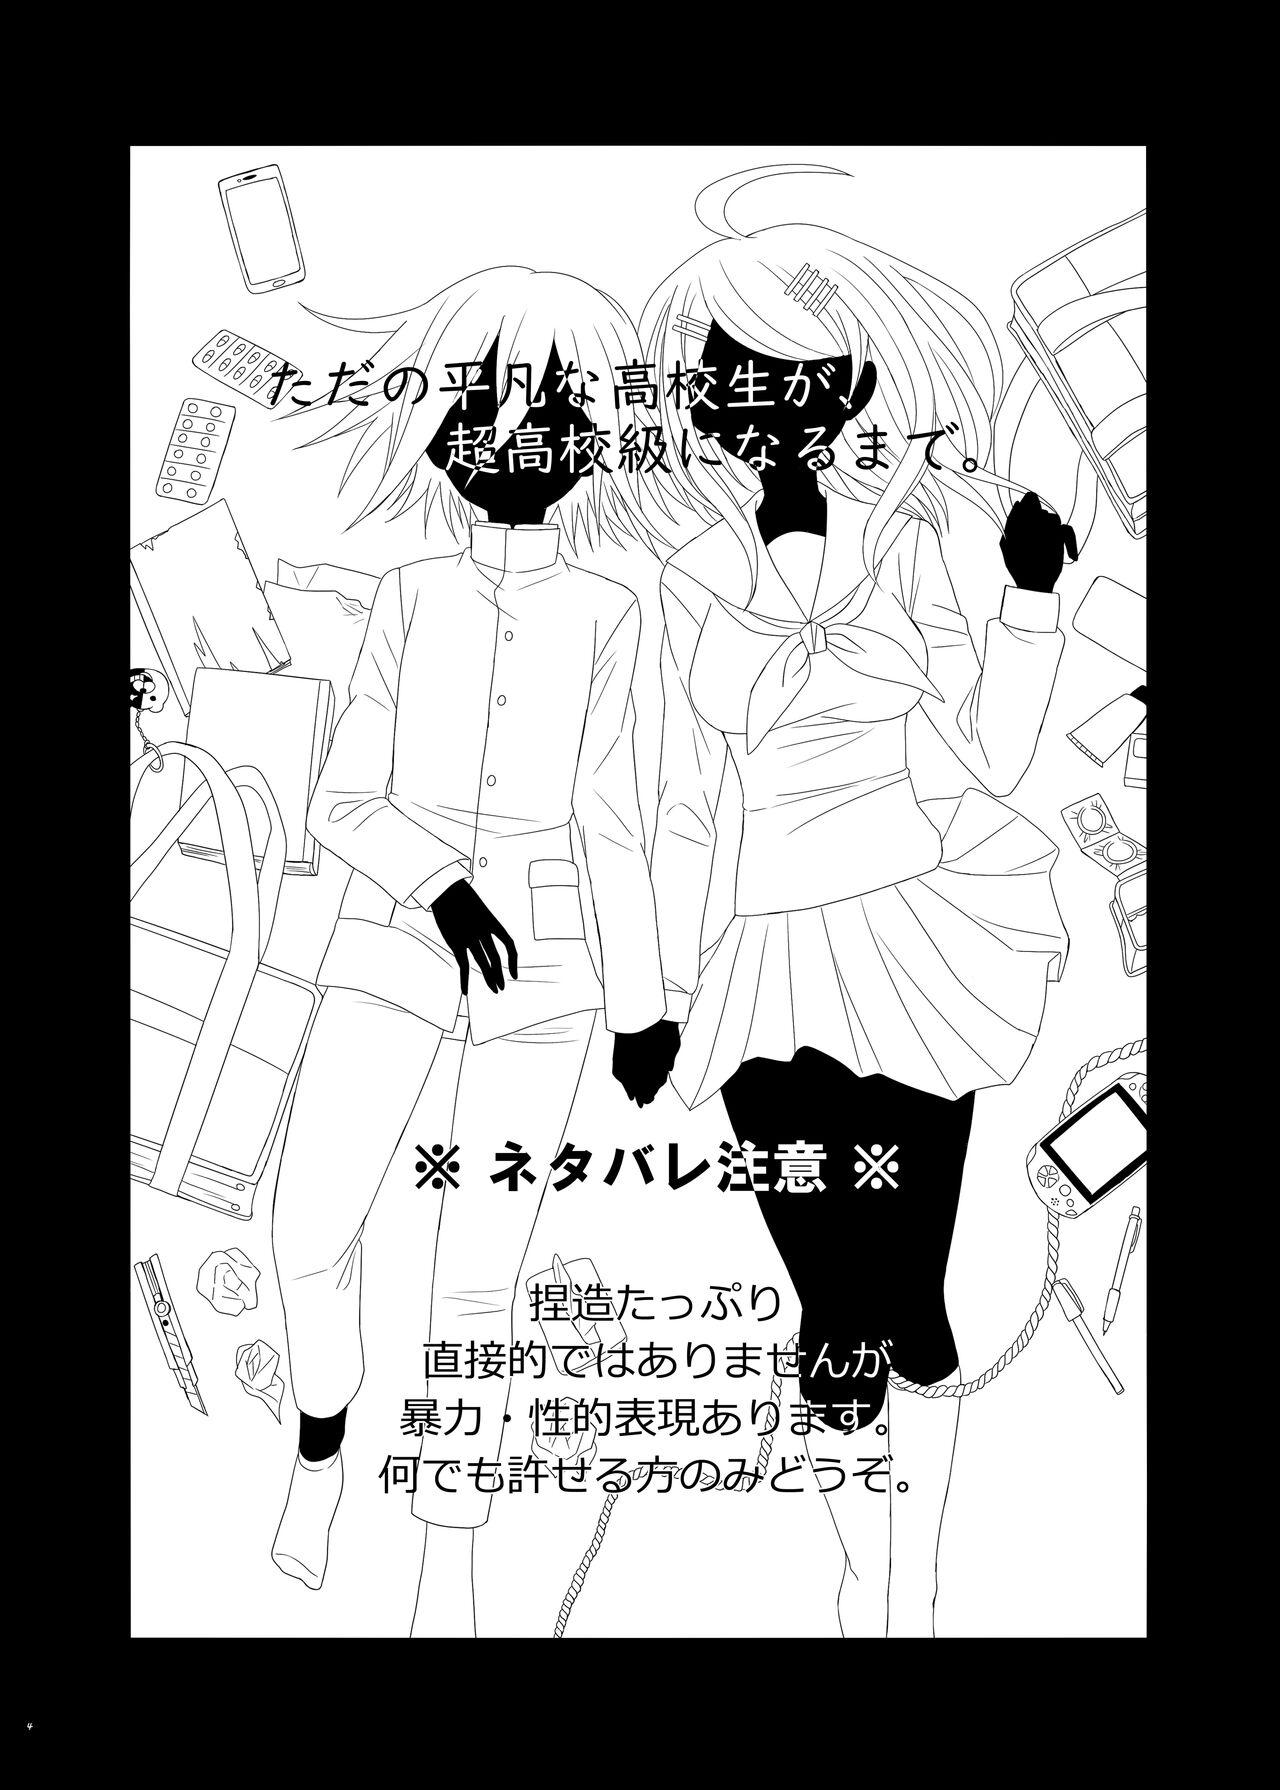 Swinger Purorougu Ouaka No Manga - Danganronpa Emo - Page 3